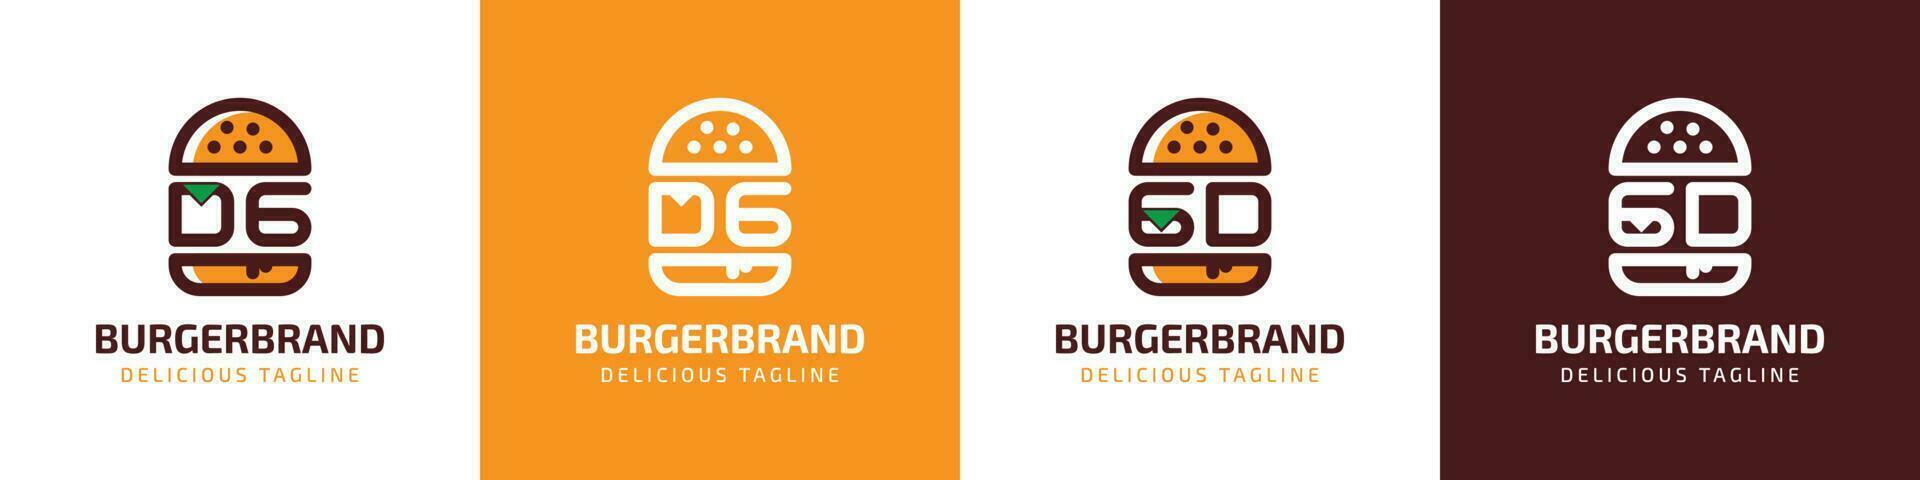 letra dg y gd hamburguesa logo, adecuado para ninguna negocio relacionado a hamburguesa con dg o gd iniciales. vector